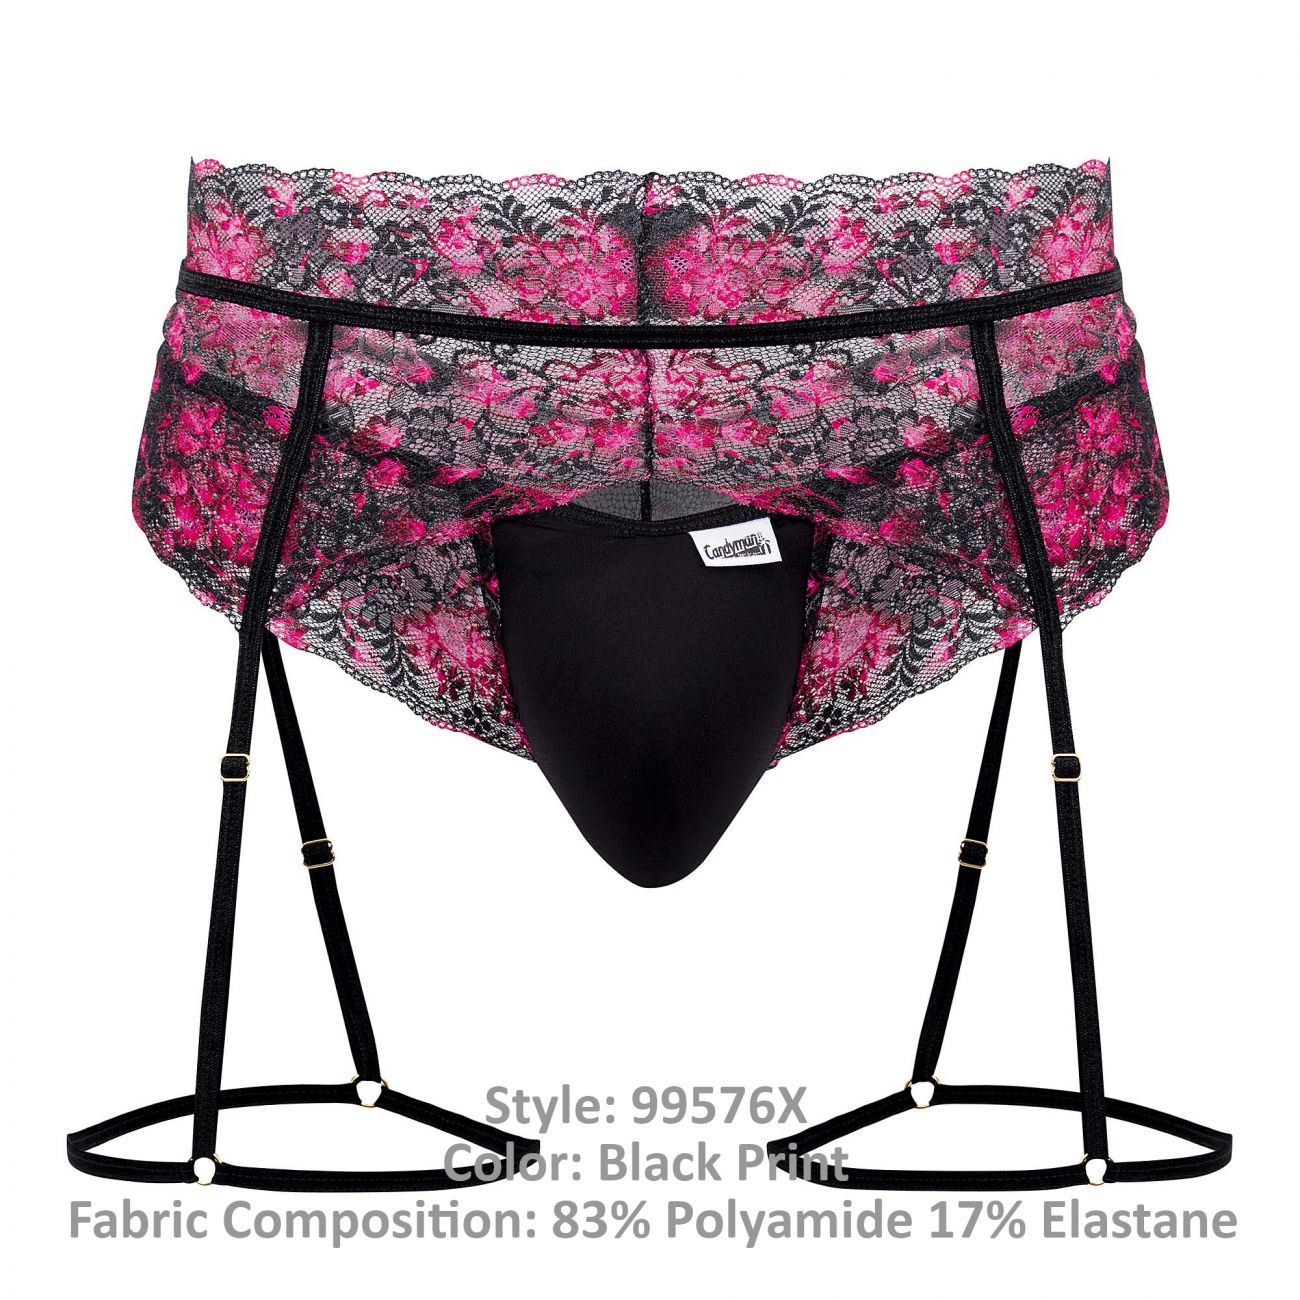 JCSTK - CandyMan 99576X Lace Garter Thongs Black Print Plus Sizes